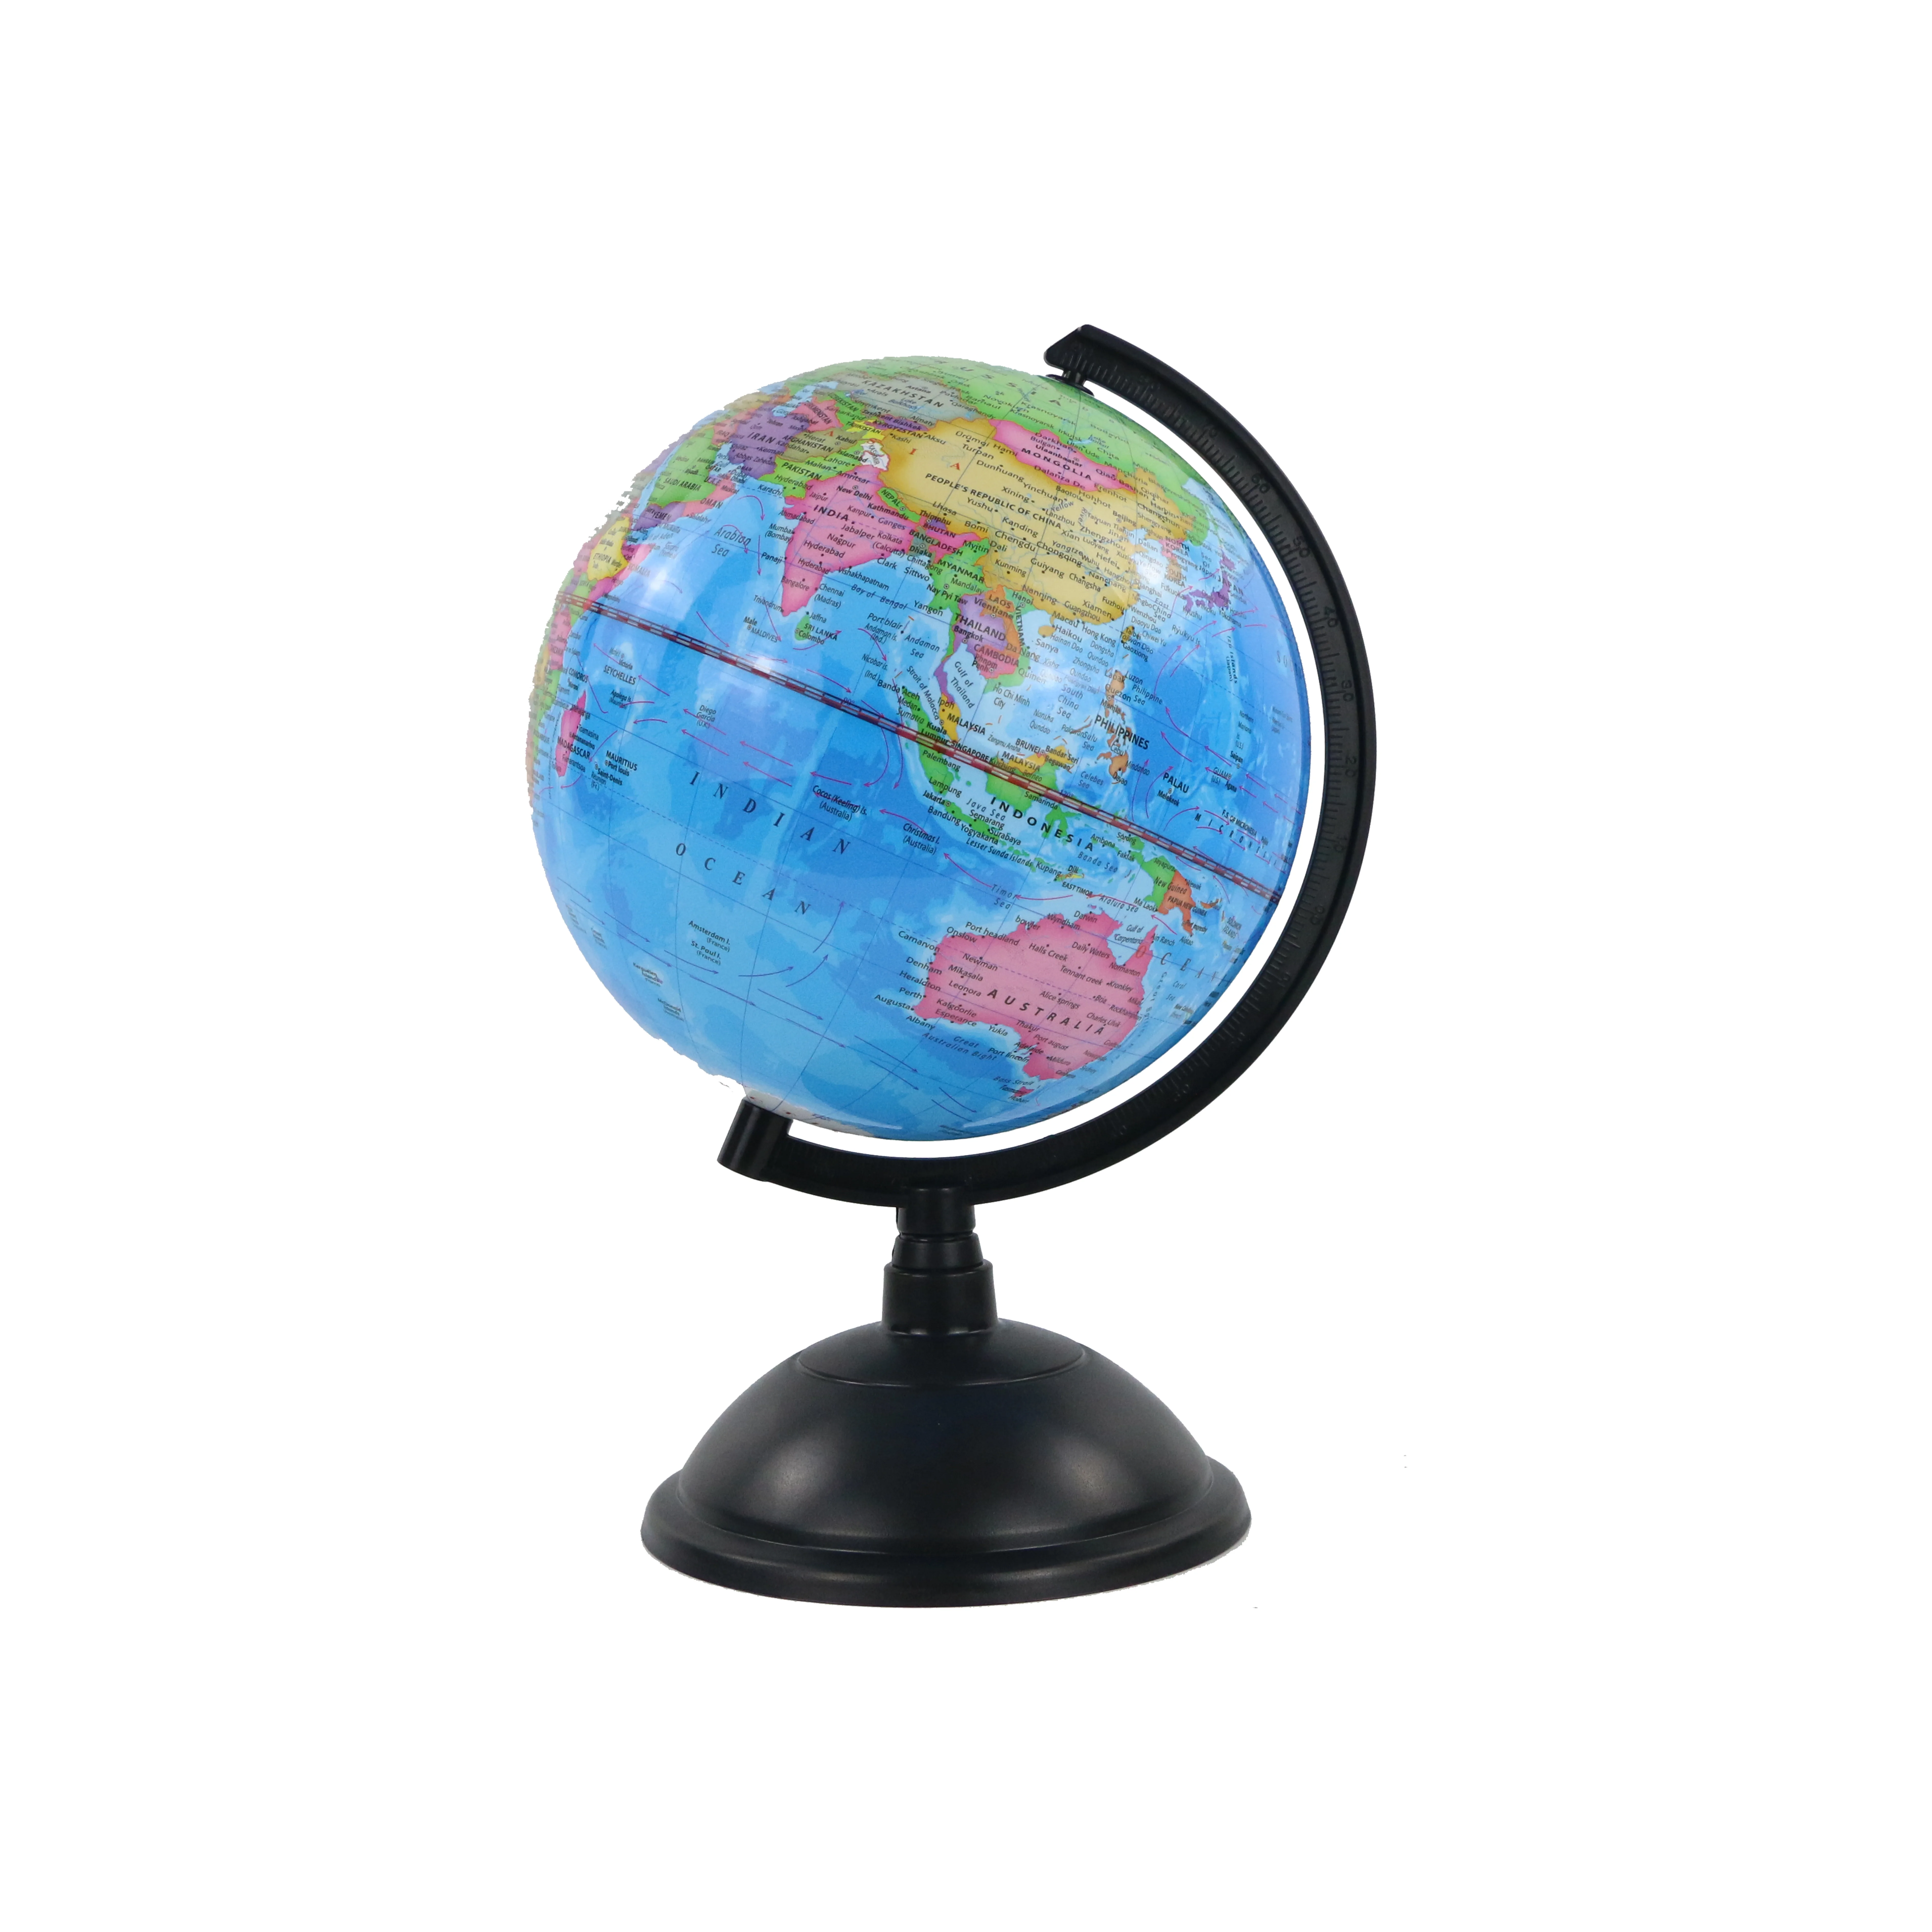 
20cm rotatable luminous globe 